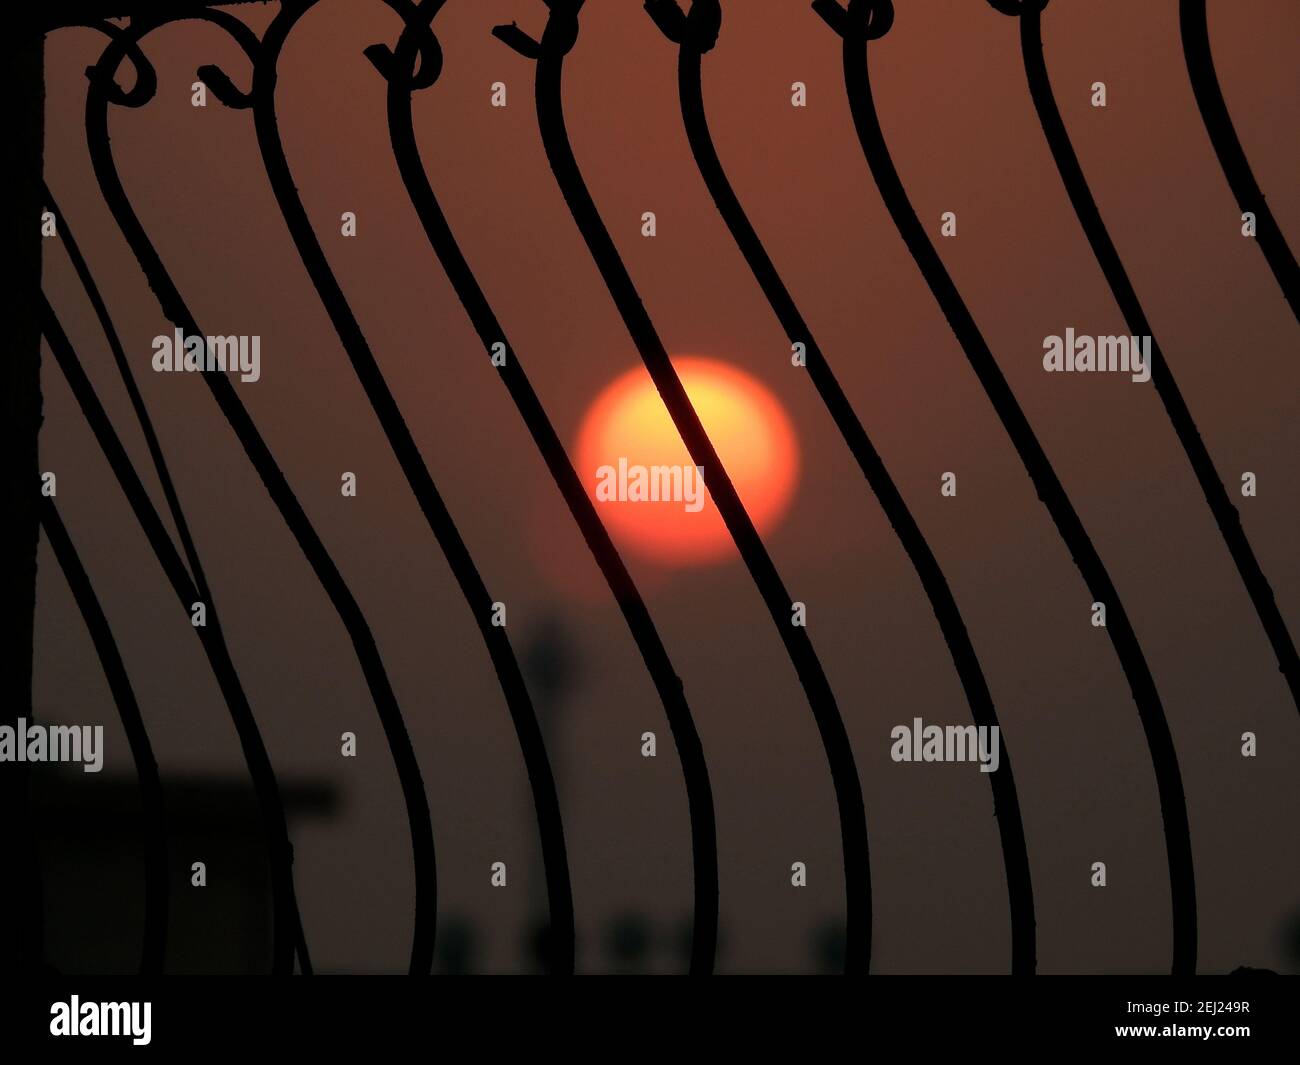 Selektive Fokus von Metall rustikalen Bars gegen den verschwommenen Himmel und Sonne während des Sonnenuntergangs, Silhouette Ansicht, Sonne hinter Bars Stockfoto